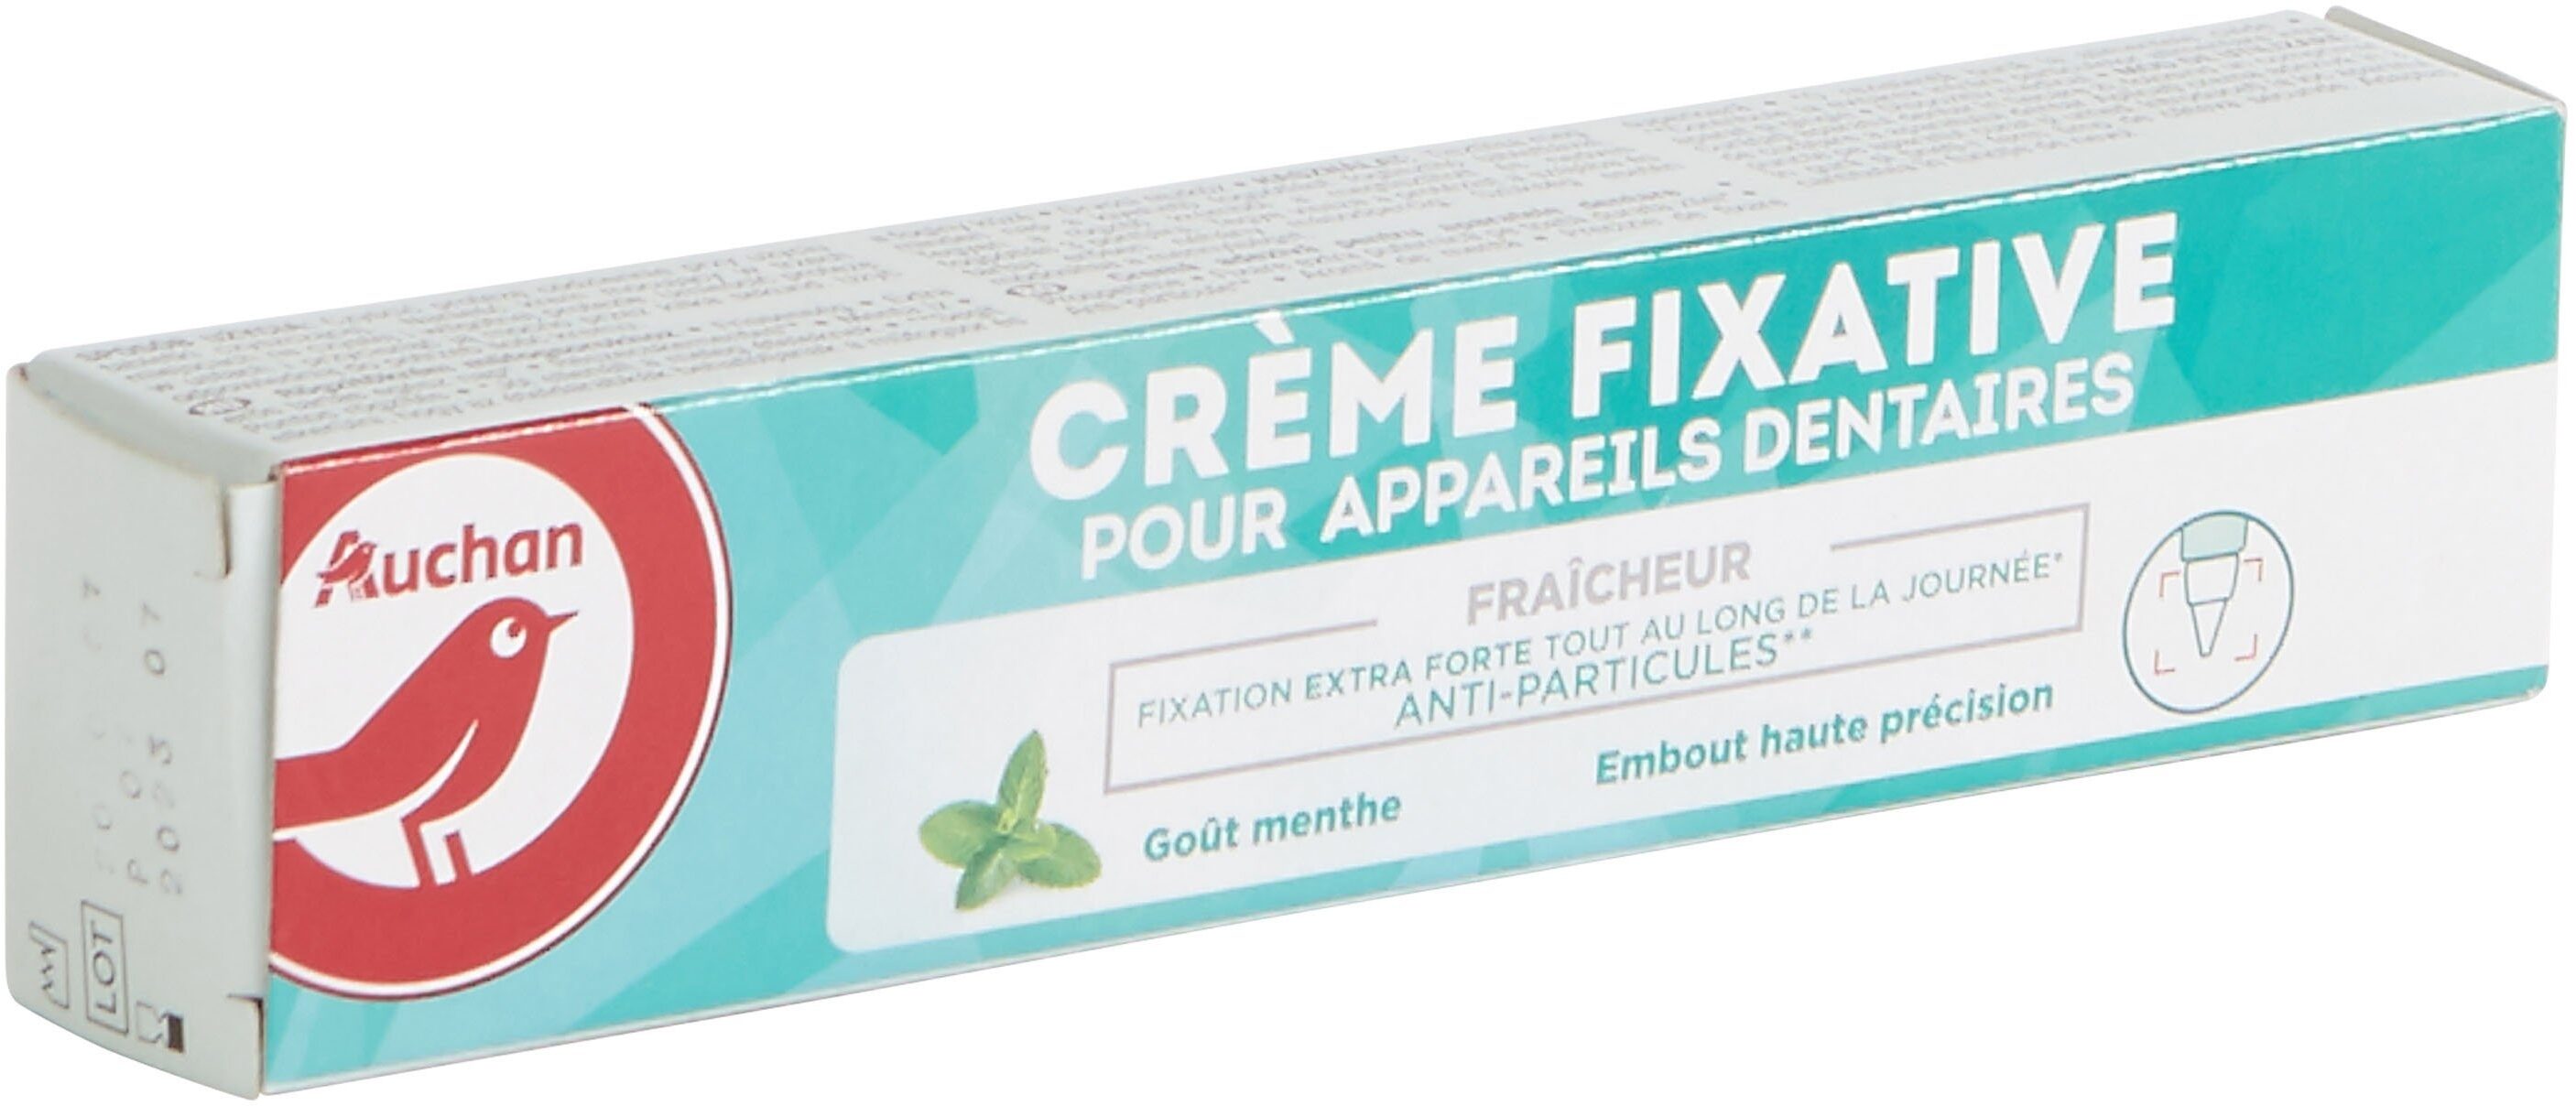 Auchan crème fixative pour appareils dentaires fraîcheur - 40 ml - Product - en